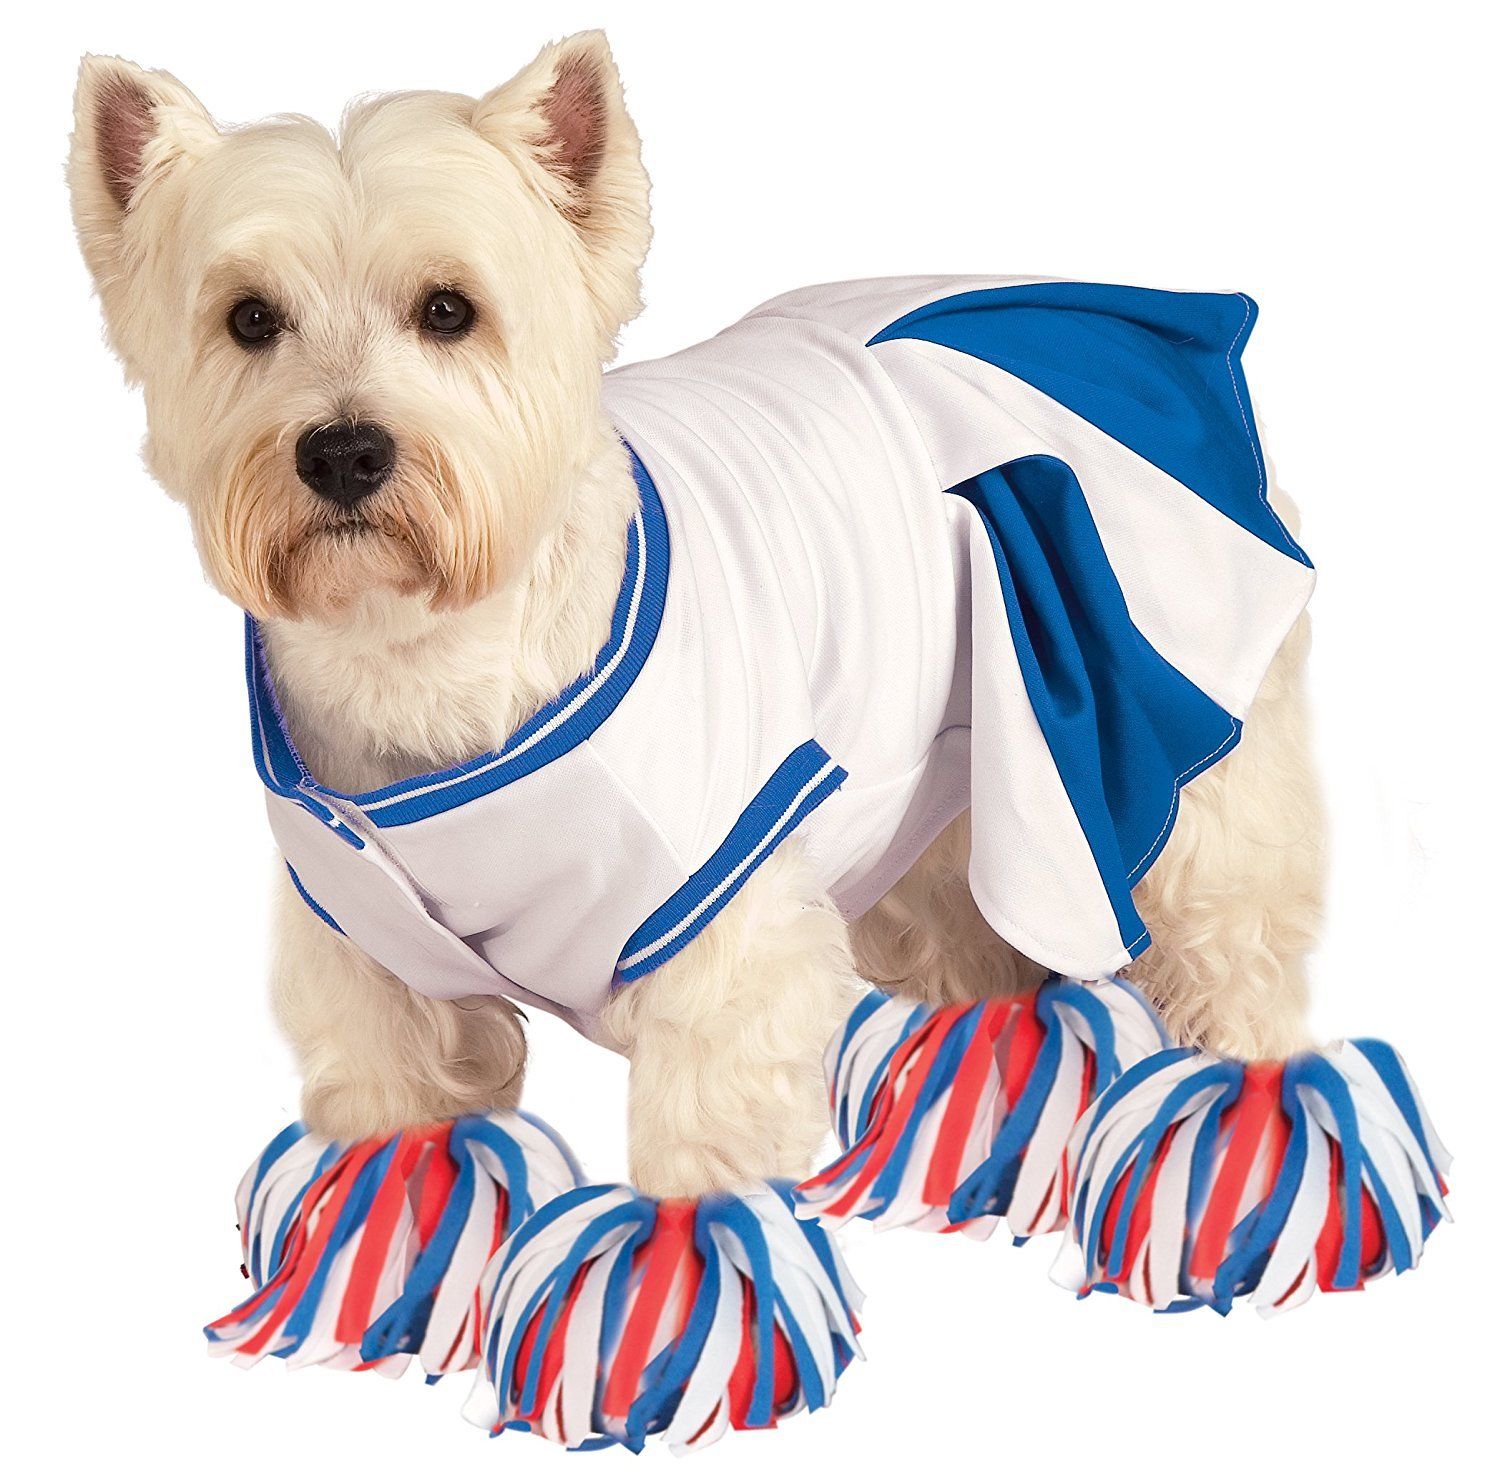 Deluxe Cheerleader Pet Costume - Bargainwizz